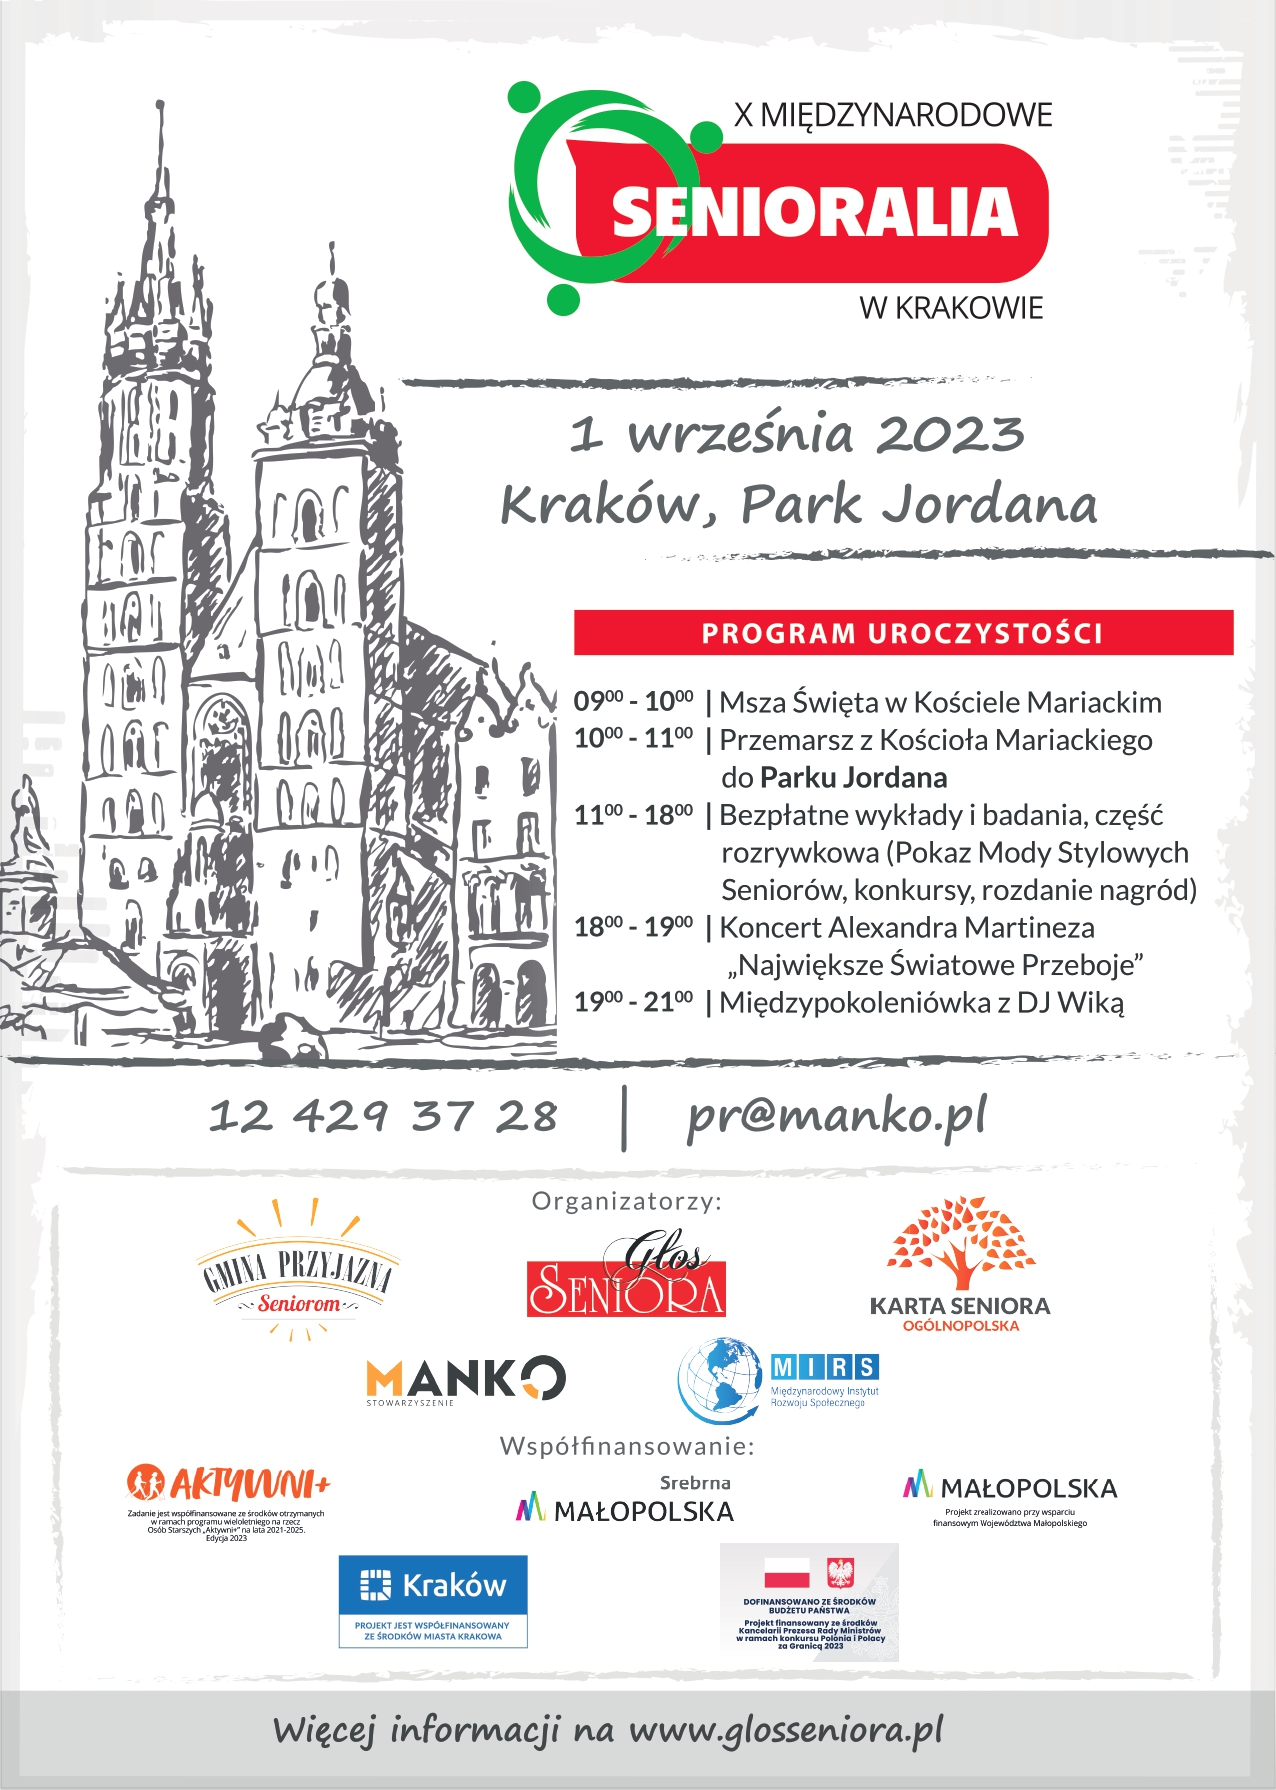 X Międzynarodowe Senioralia w Krakowie